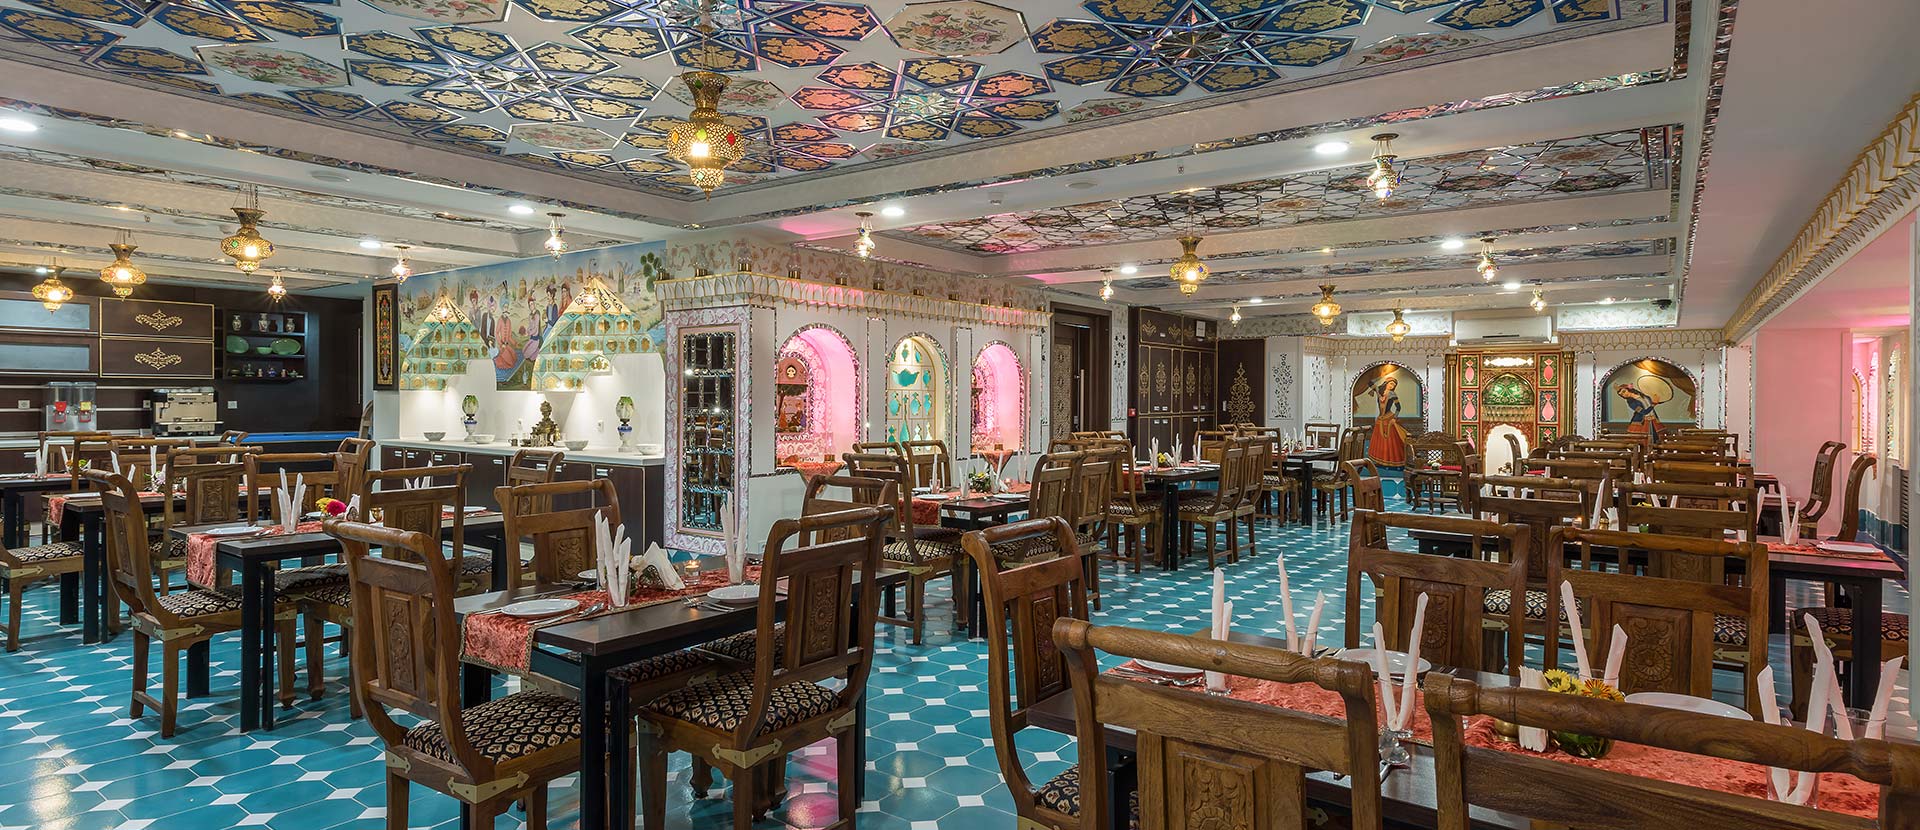 غذاخانه سنتی هتل شیخ بهایی